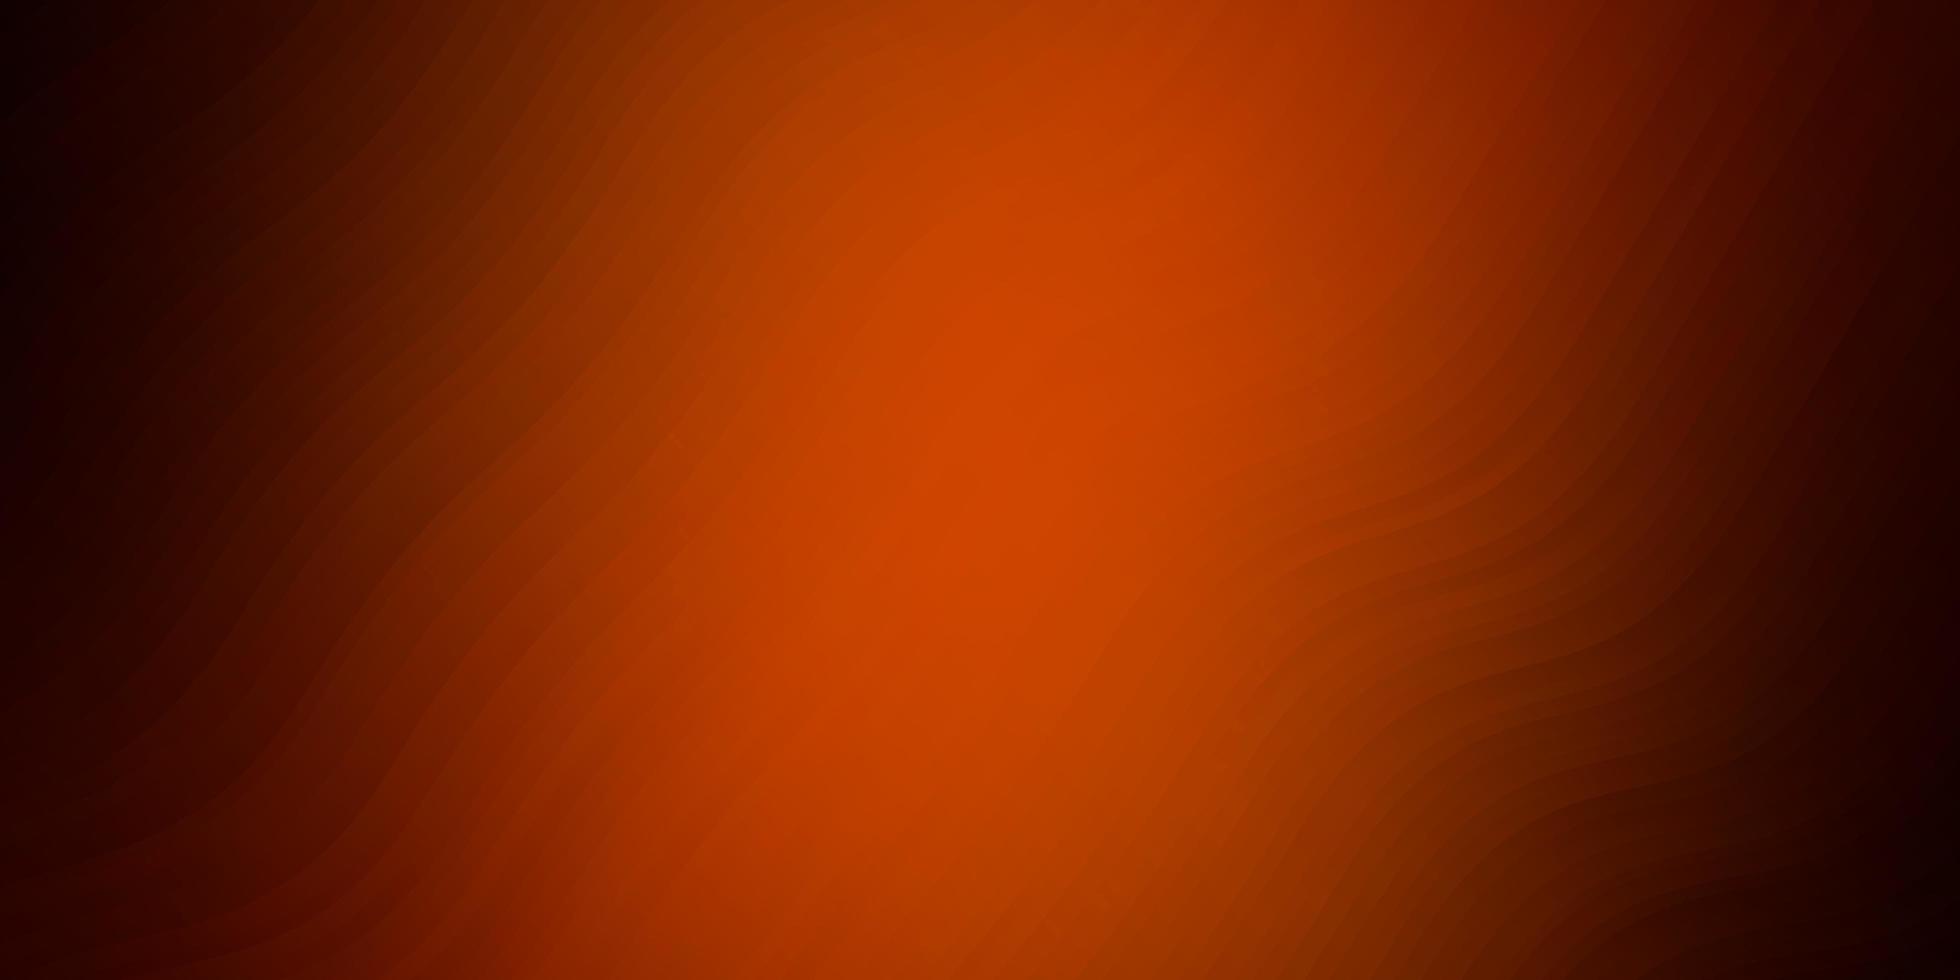 mörk orange vektor layout med kurvor. abstrakt illustration med lutningsbågar. mönster för webbplatser, målsidor.